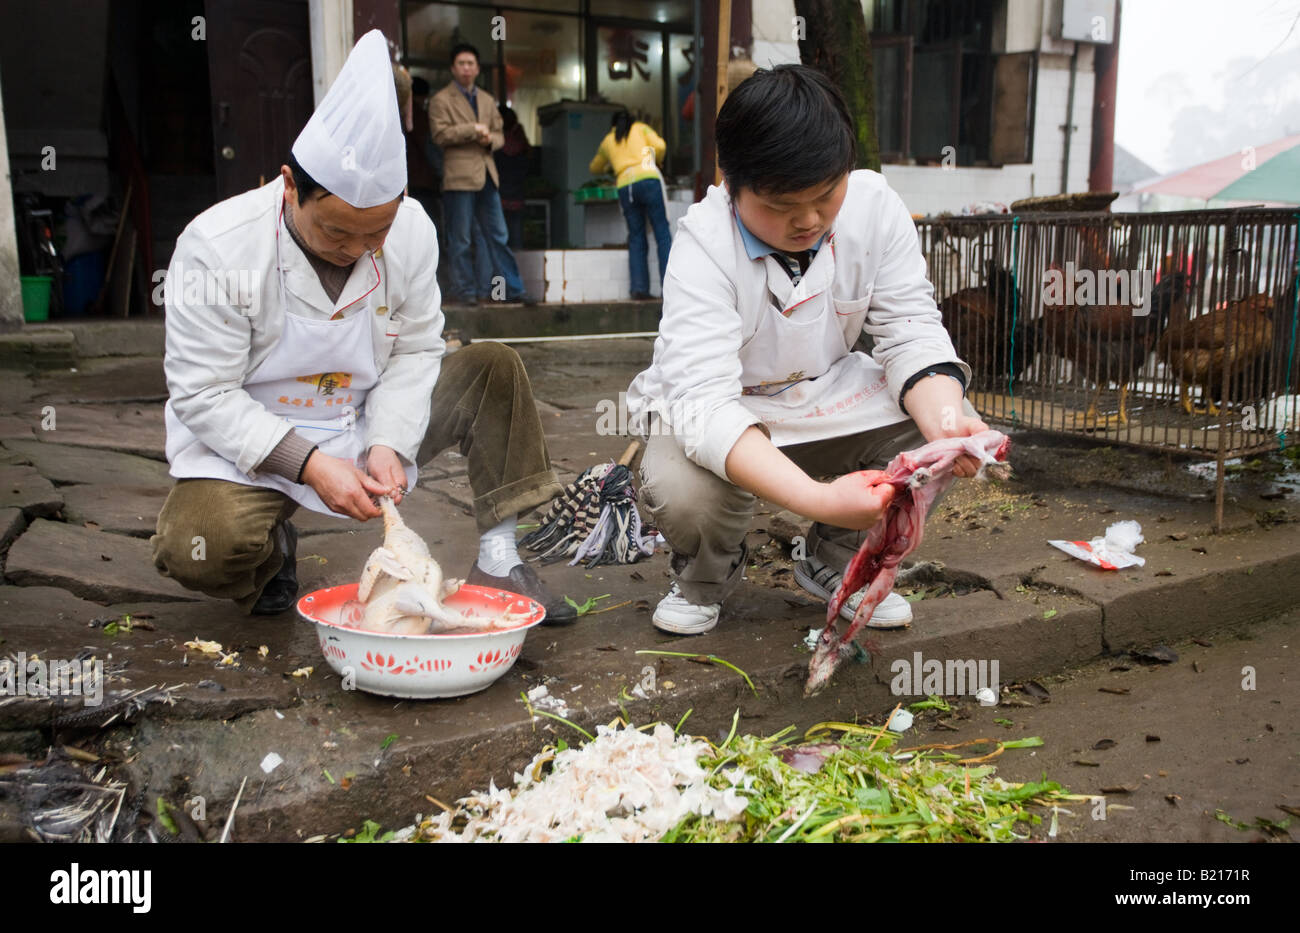 Chefs cinesi gut coniglio e pollo pluck a cucinare per i clienti del ristorante a Bao Ding vicino a Chongqing Cina Foto Stock